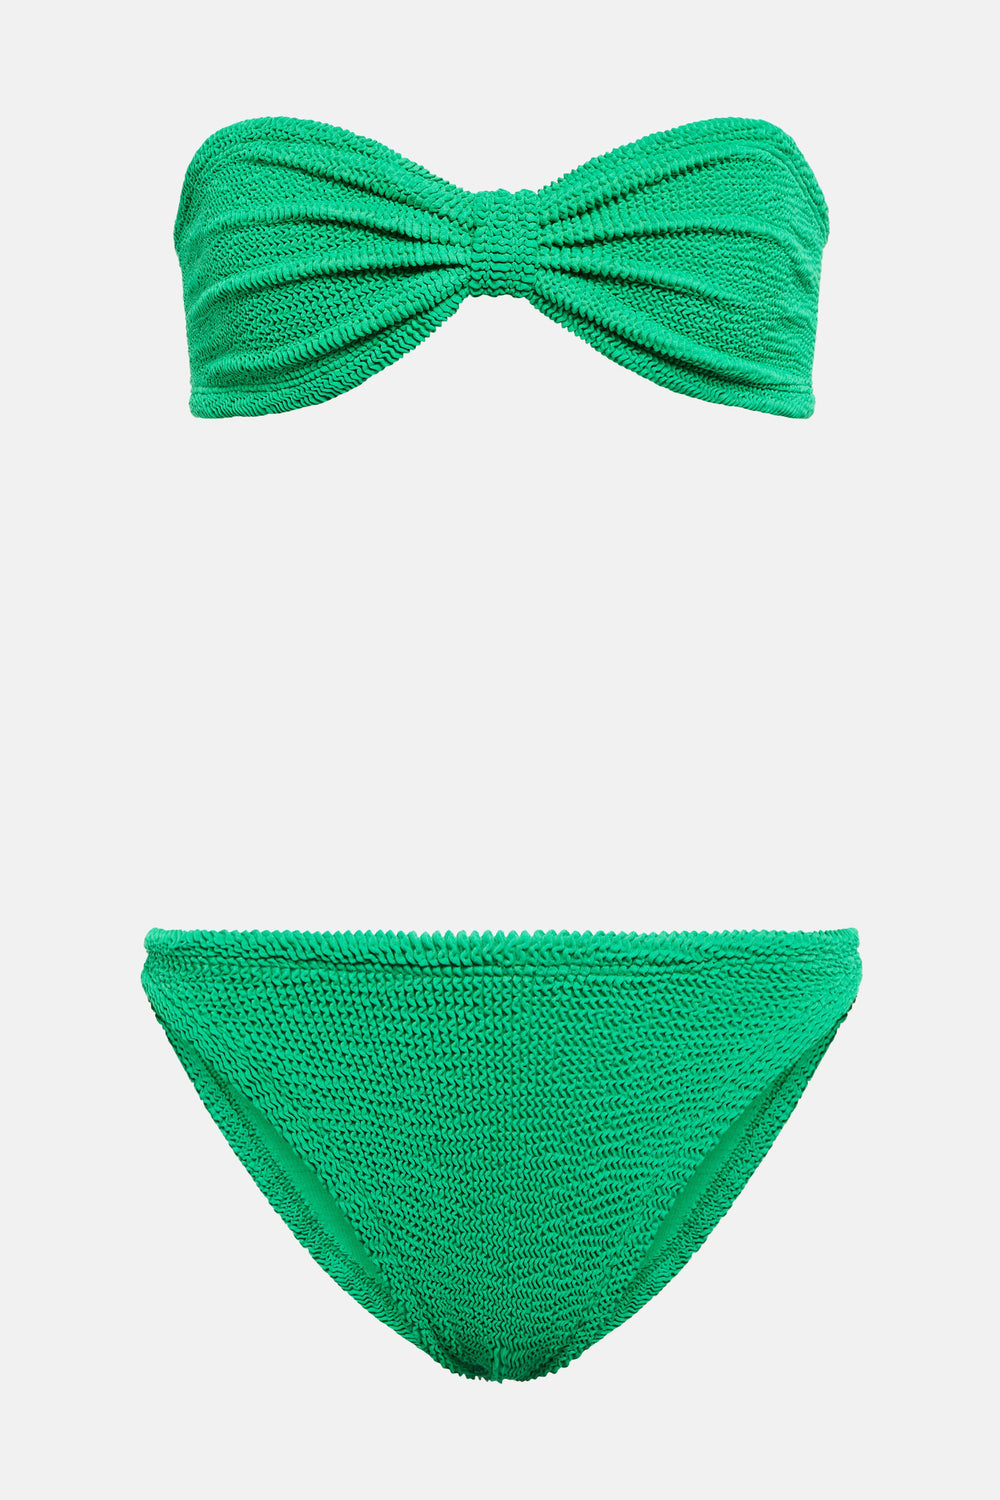 Jean Bikini Emerald